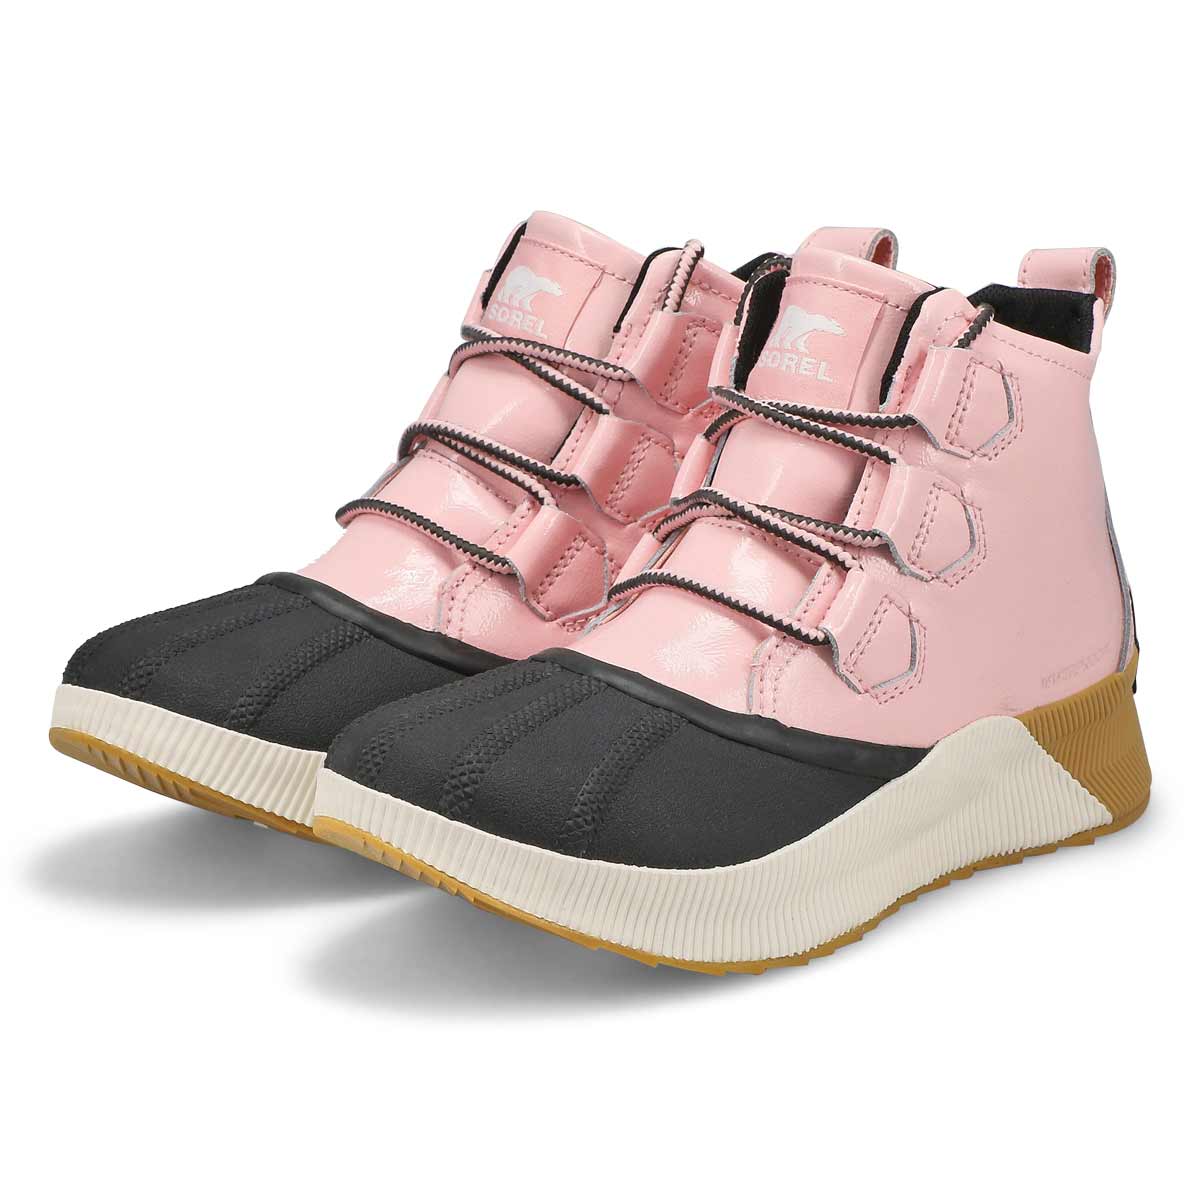 Sorel Out N About Iii Mid Sneaker Waterproof in Pink